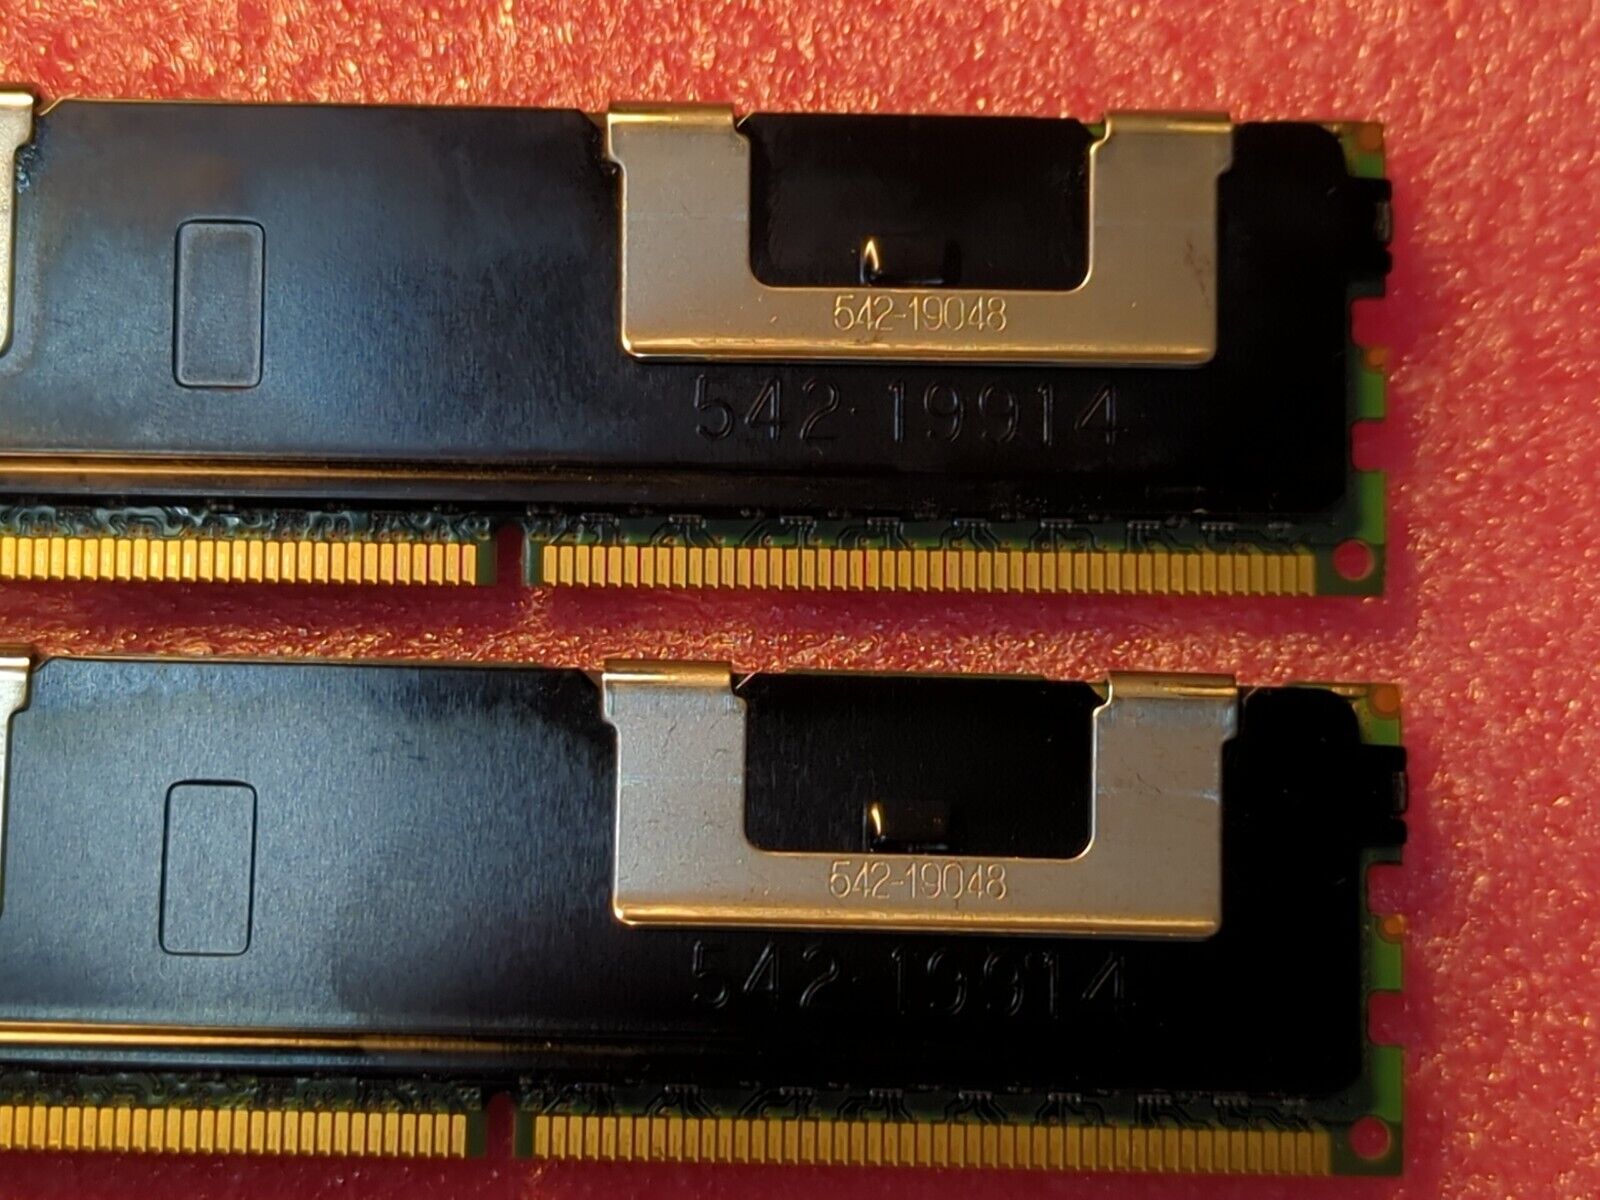 16GB Kit Micron 8GB DDR3 4Rx4 PC3-8500R Server Memory DIMM MT72JSZS1G72PZ